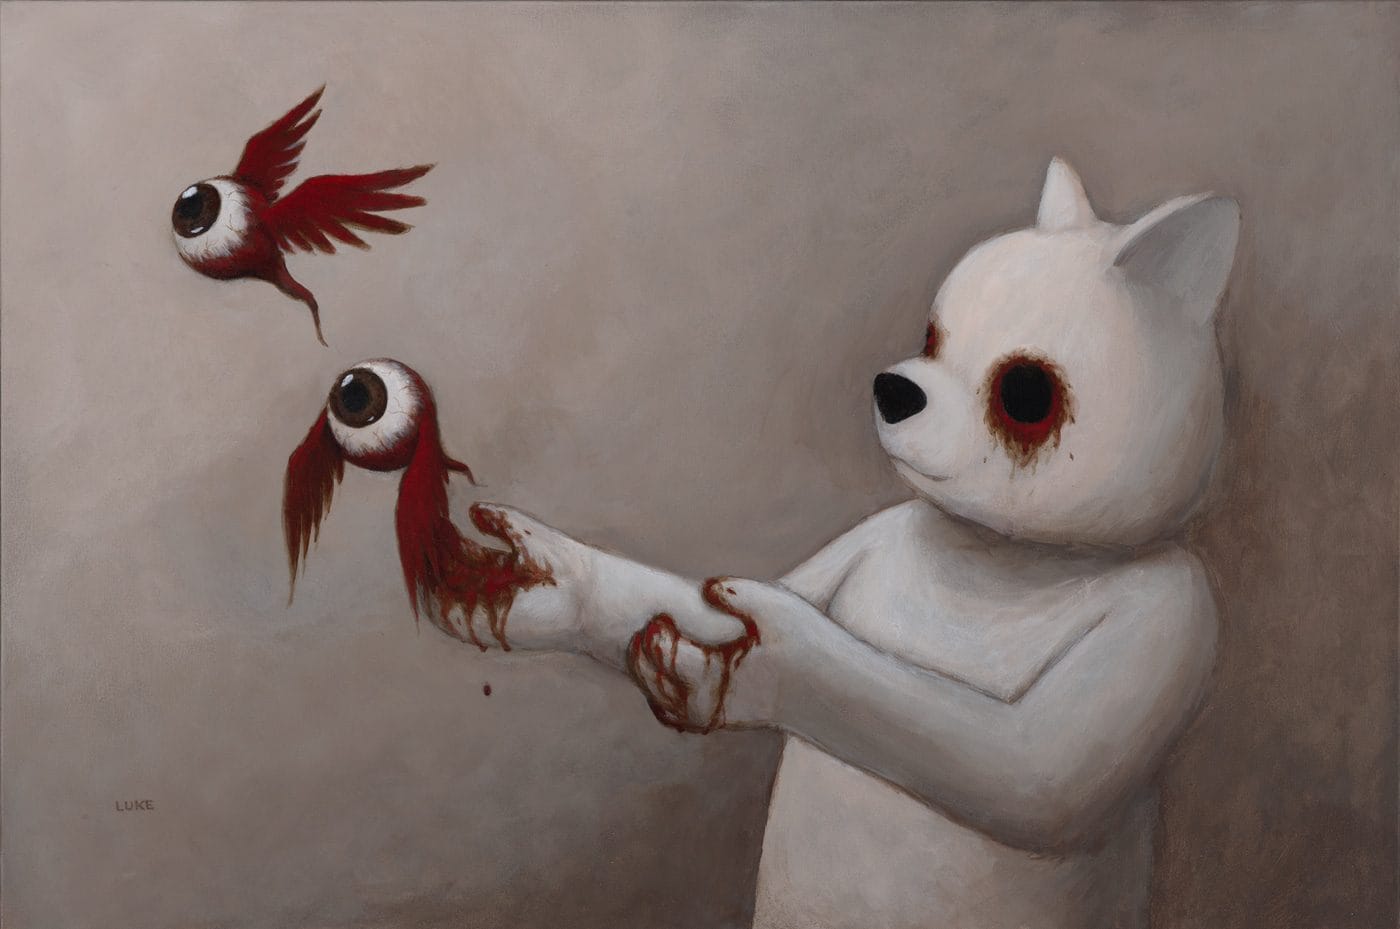 Luke Chueh. "Let Fly" (acrylic on canvas_24” x 36”)